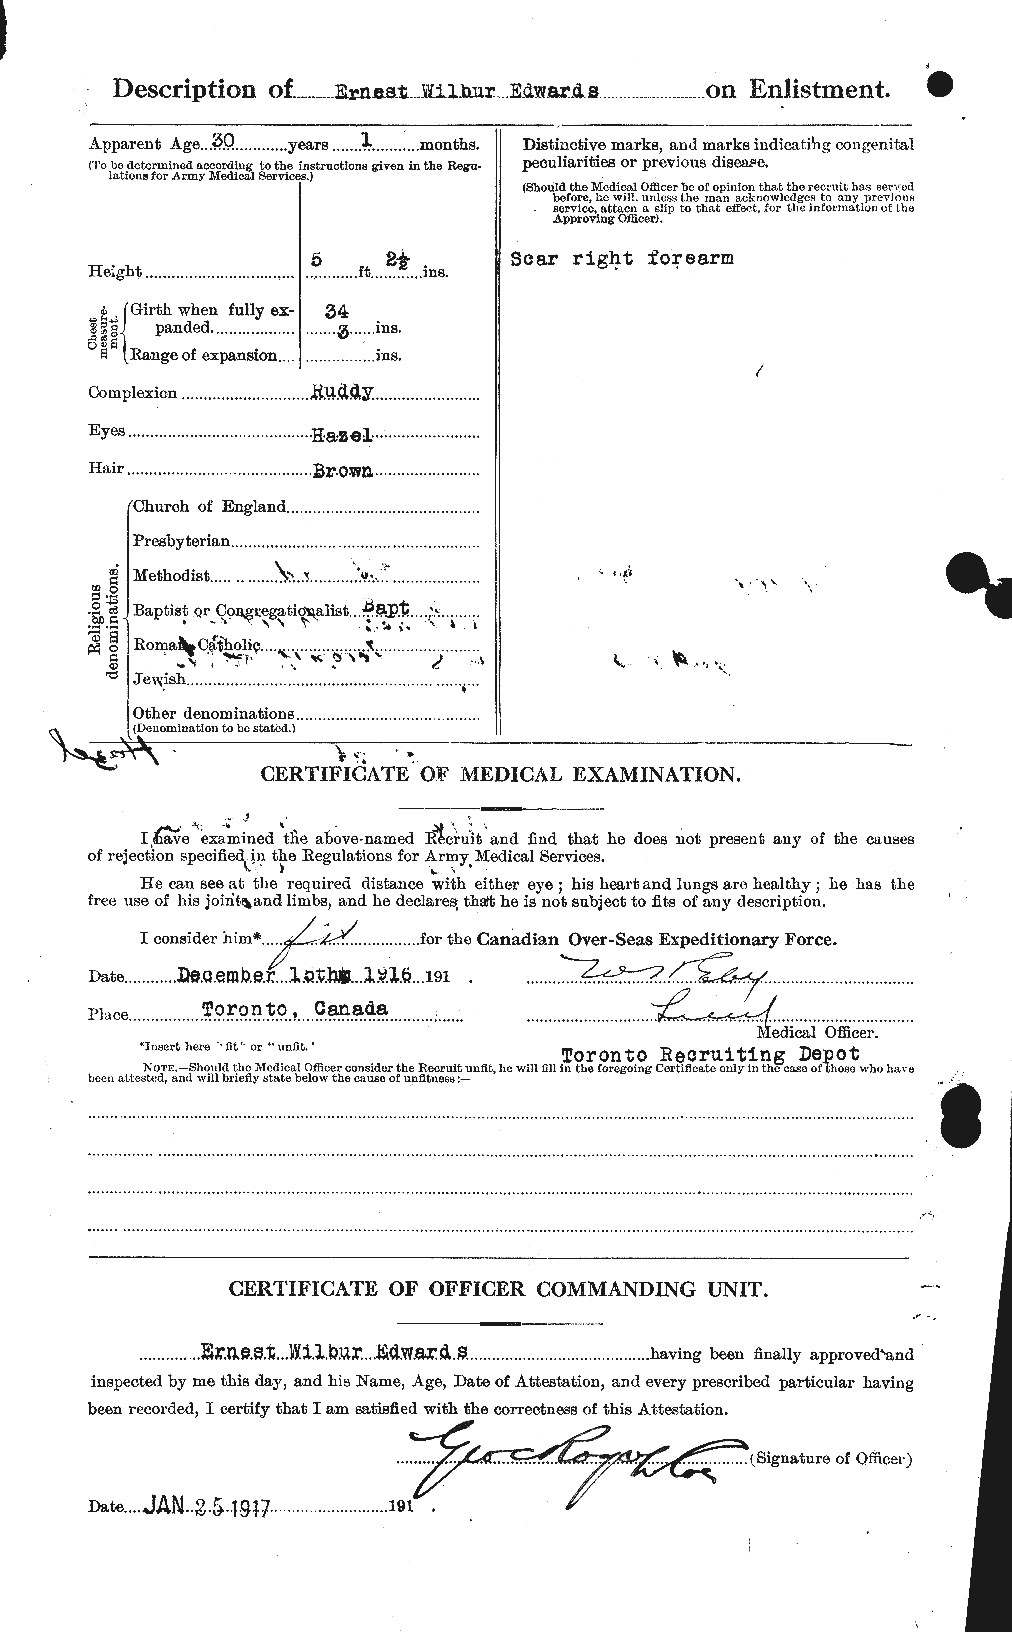 Dossiers du Personnel de la Première Guerre mondiale - CEC 309017b